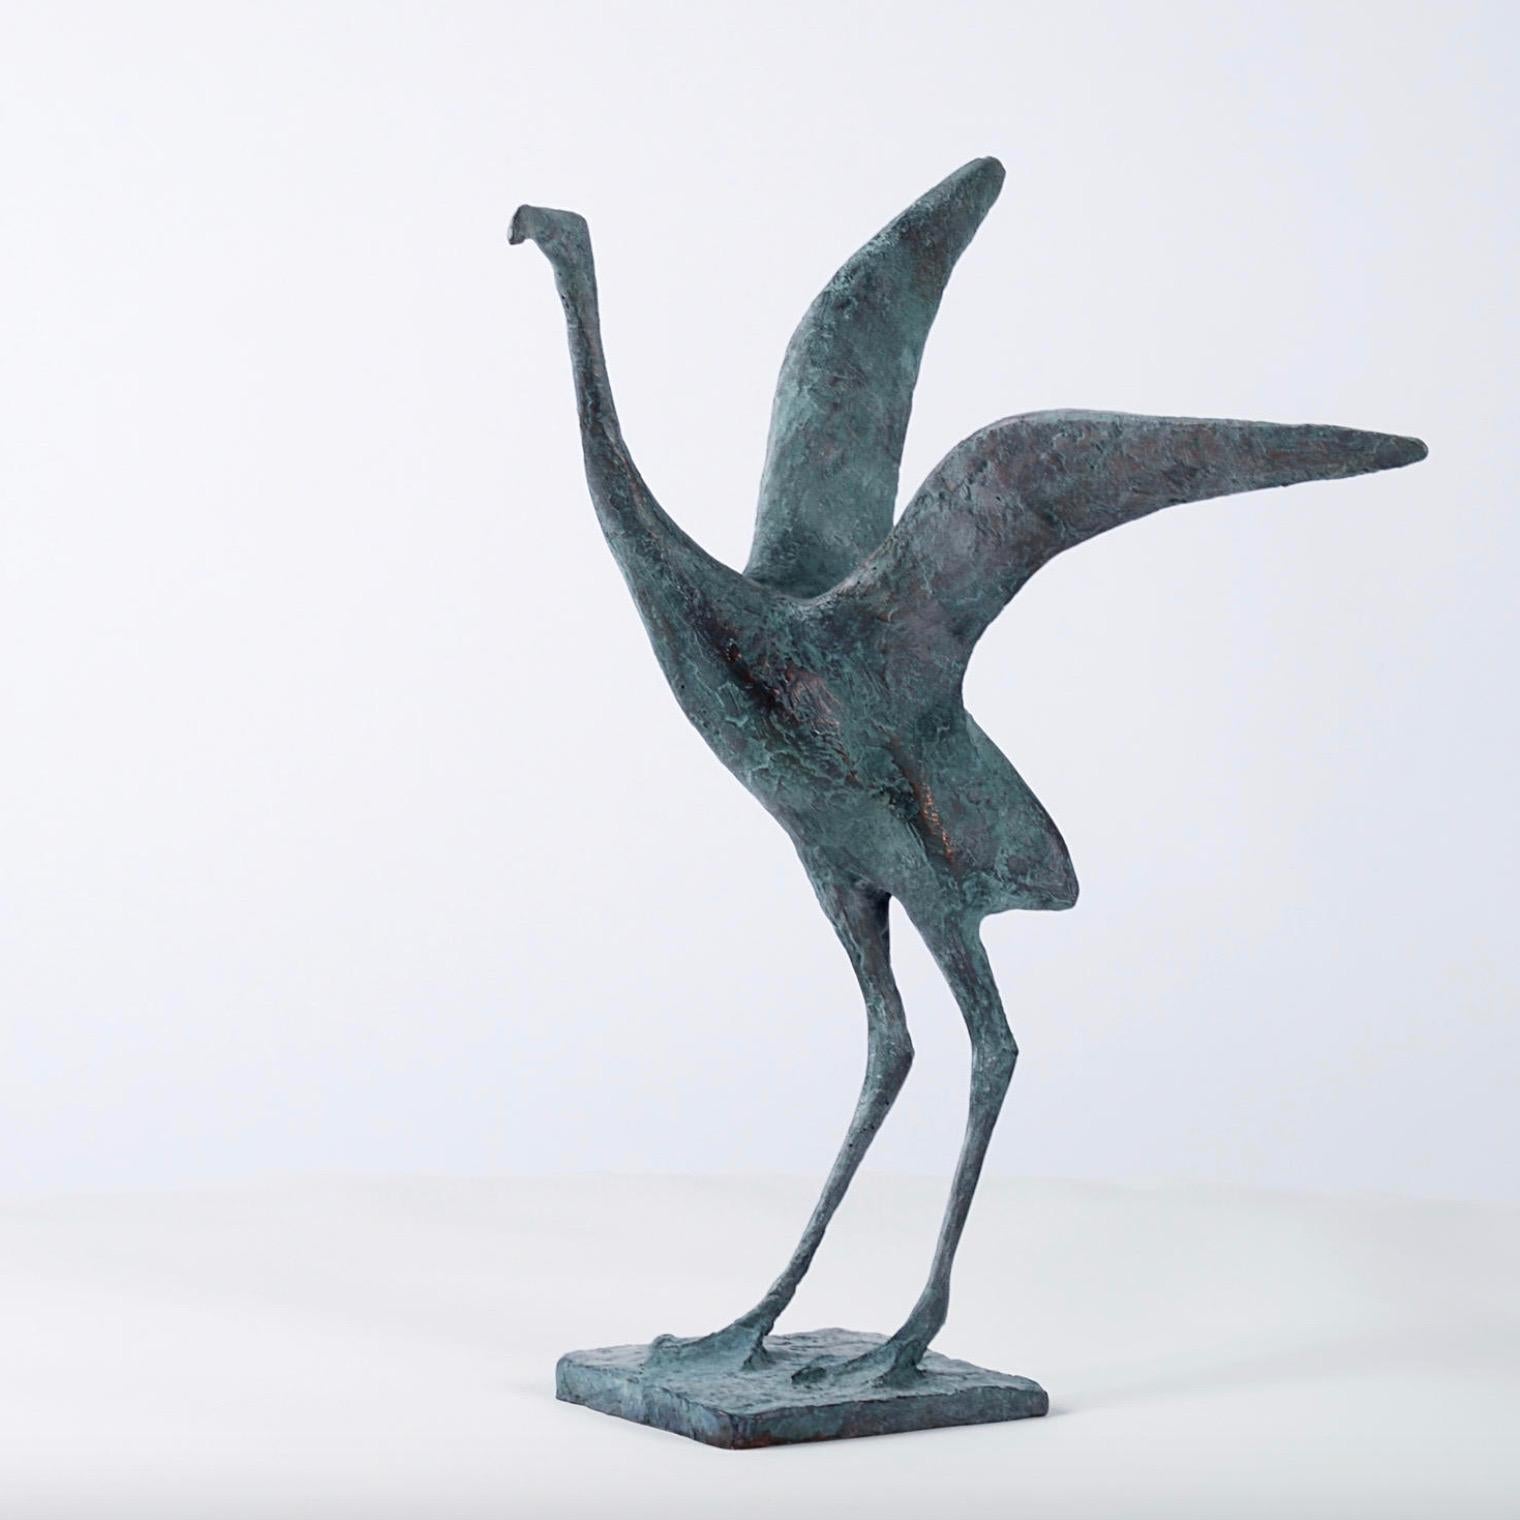 Flight V est une sculpture en bronze de l'artiste contemporain français Pierre Yermia, dont les dimensions sont 37 cm × 33 cm × 26 cm (14.6 × 13 × 10.2 in). La sculpture est signée et numérotée, elle fait partie d'une édition limitée à 8 exemplaires